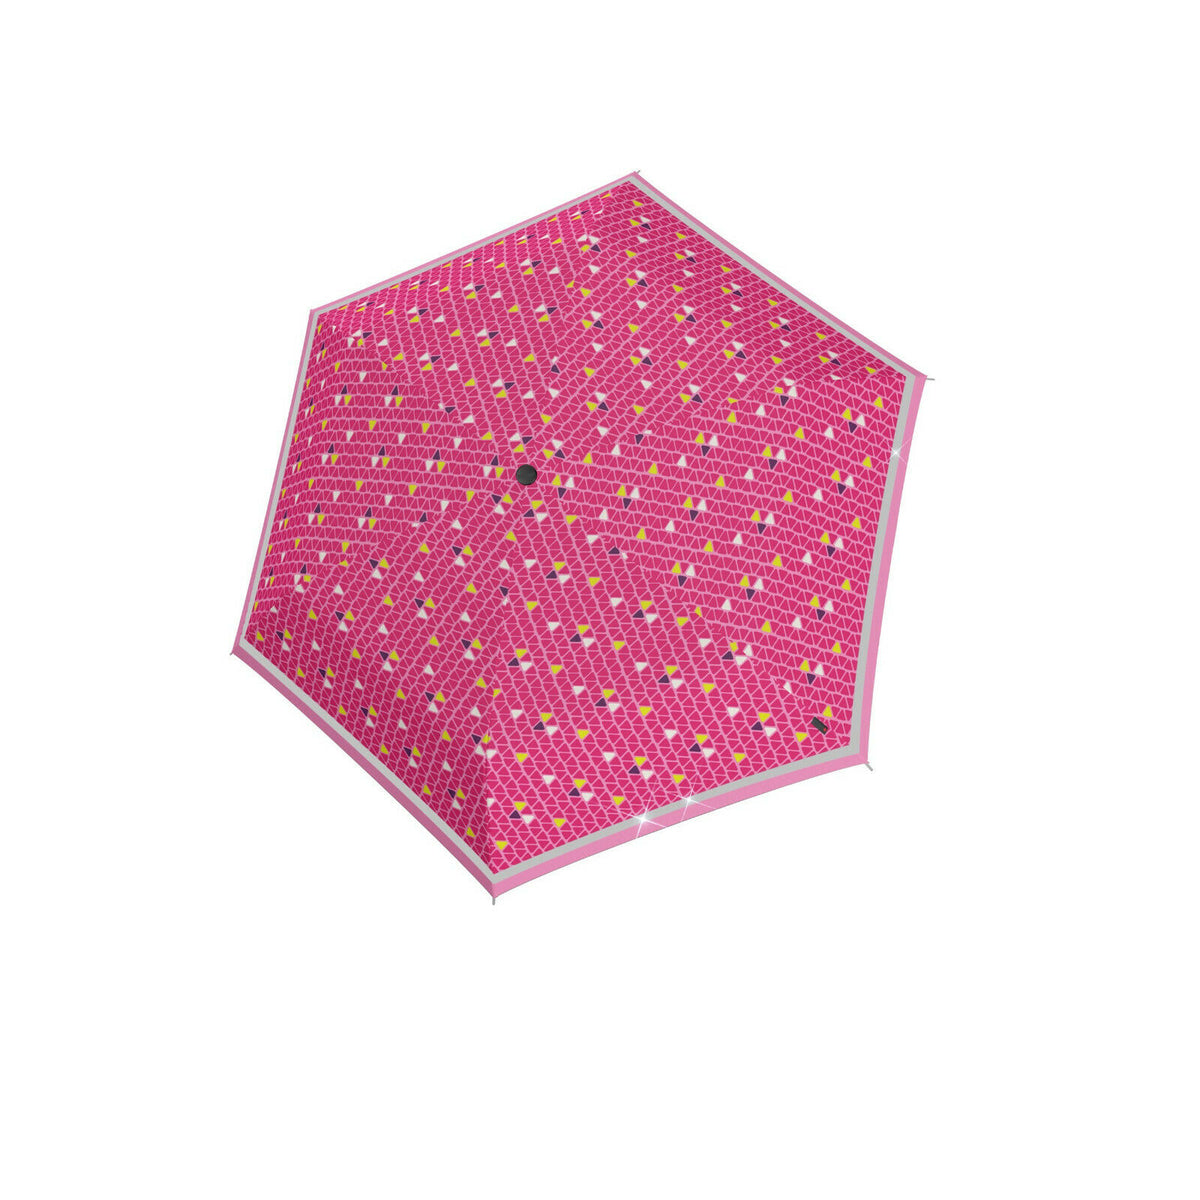 tr Kinder Taschenschirm Knirps Schirm Rookie Regenschirm reflektierend